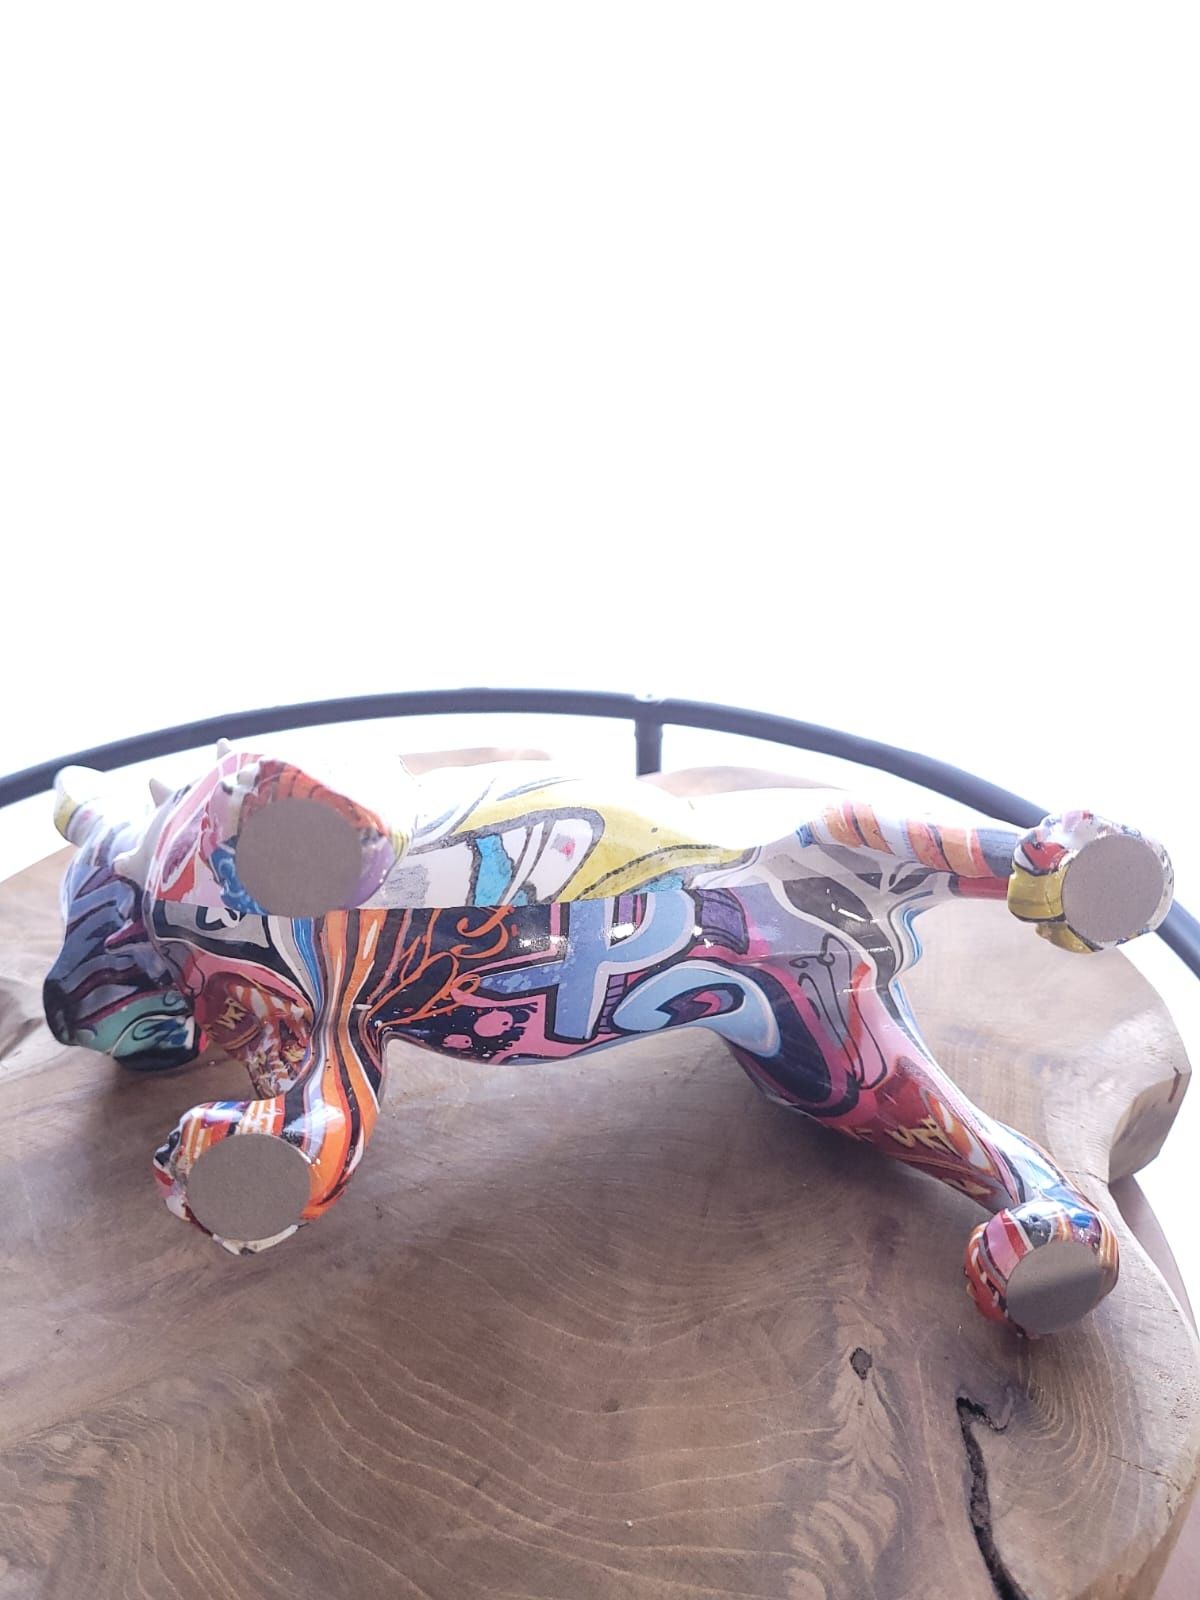 Figurka dekoracyjna pies buldog, graffiti, design, kolekcja